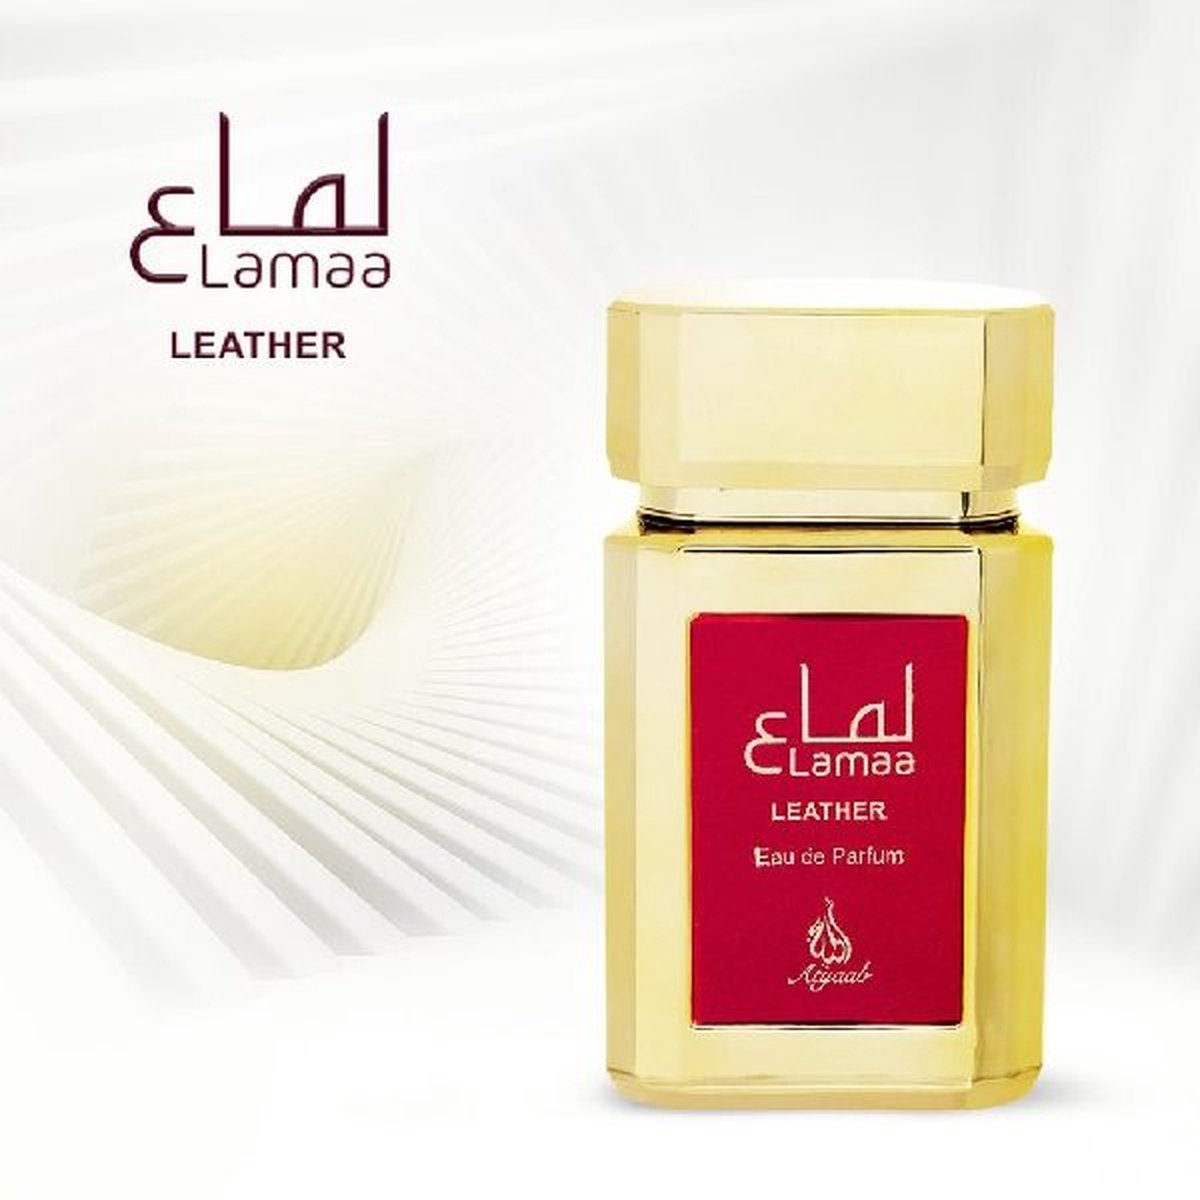 Khadlaj - Lama’a Leather Gold - Eau de Parfum - 100ml